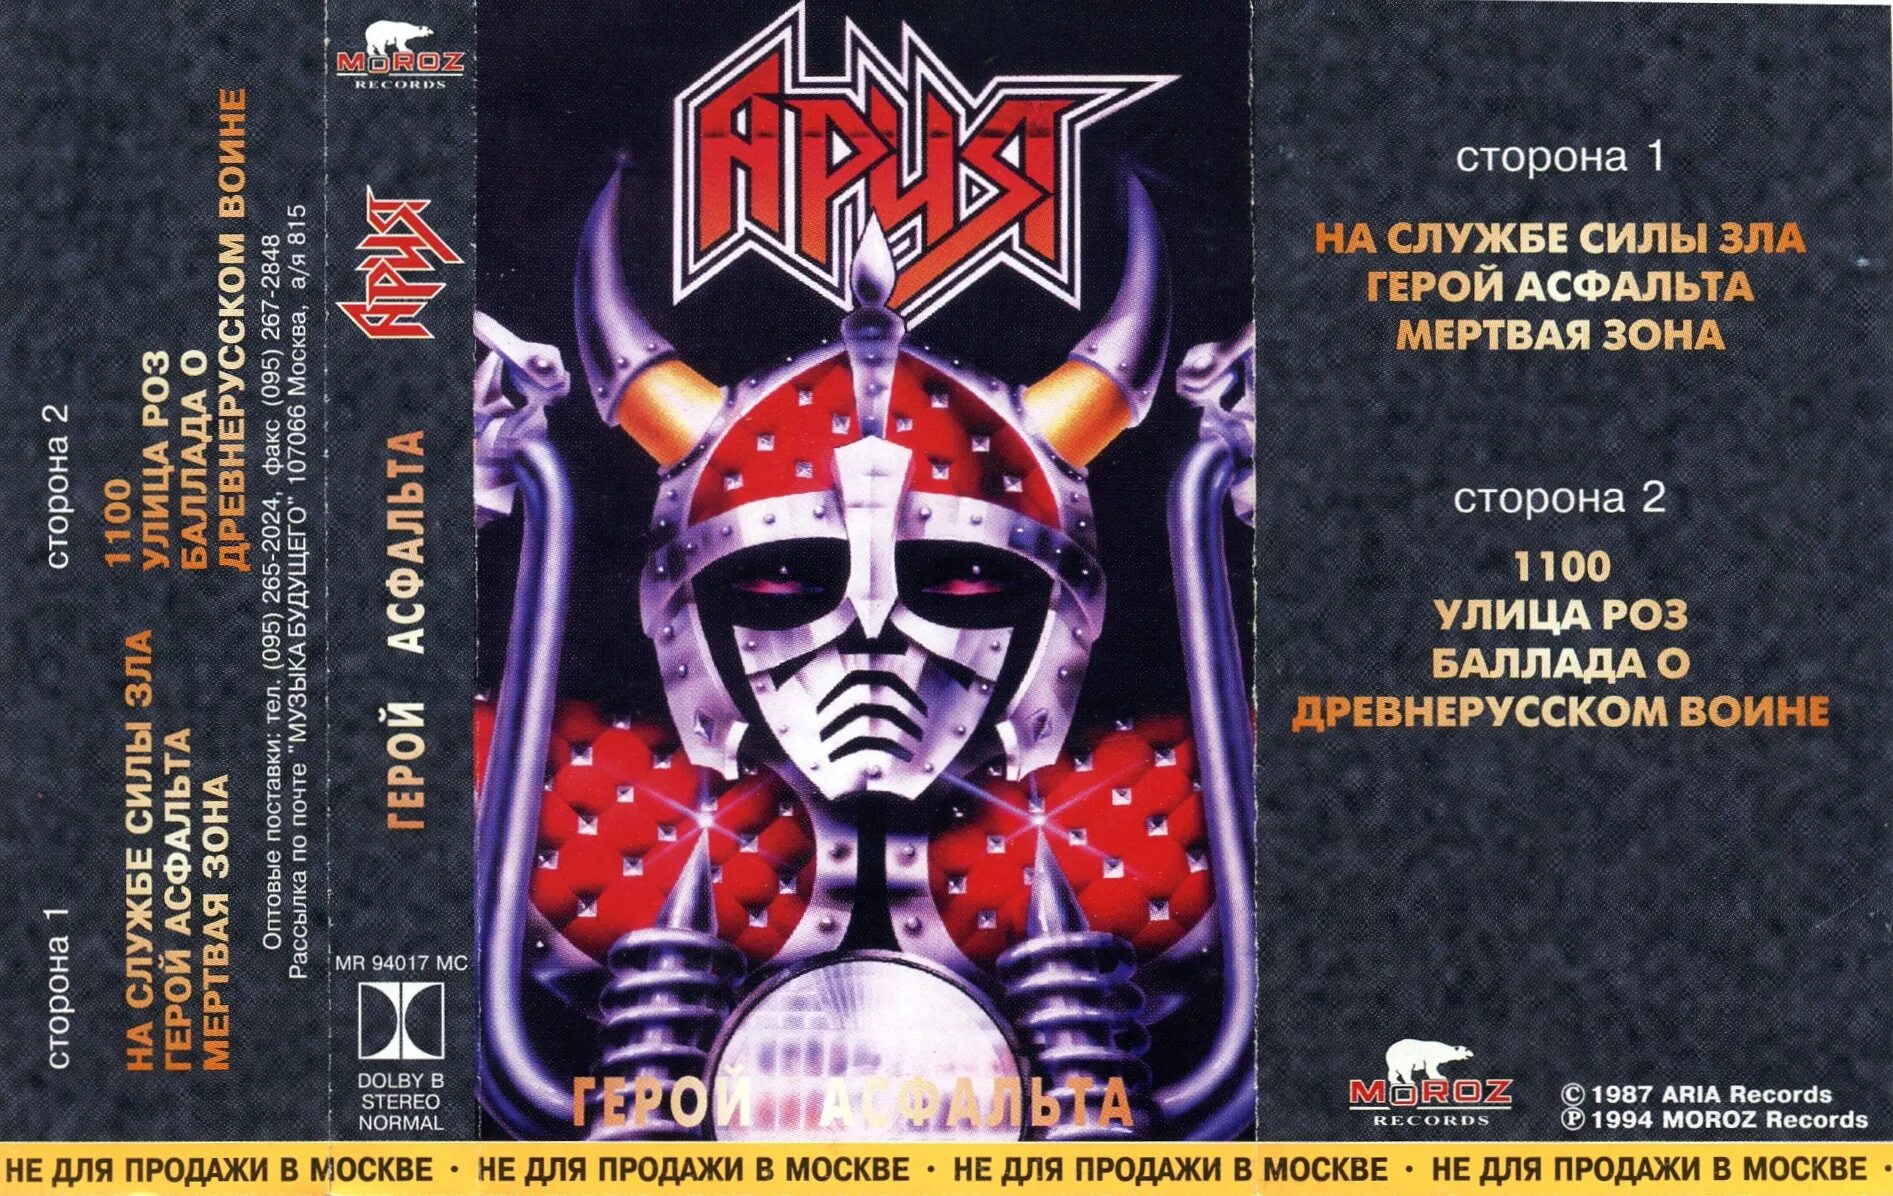 Гори асфальт ария. Ария 1987 альбом. Ария 1987 герой асфальта обложка. Группа Ария кассета. Ария герой асфальта кассета.